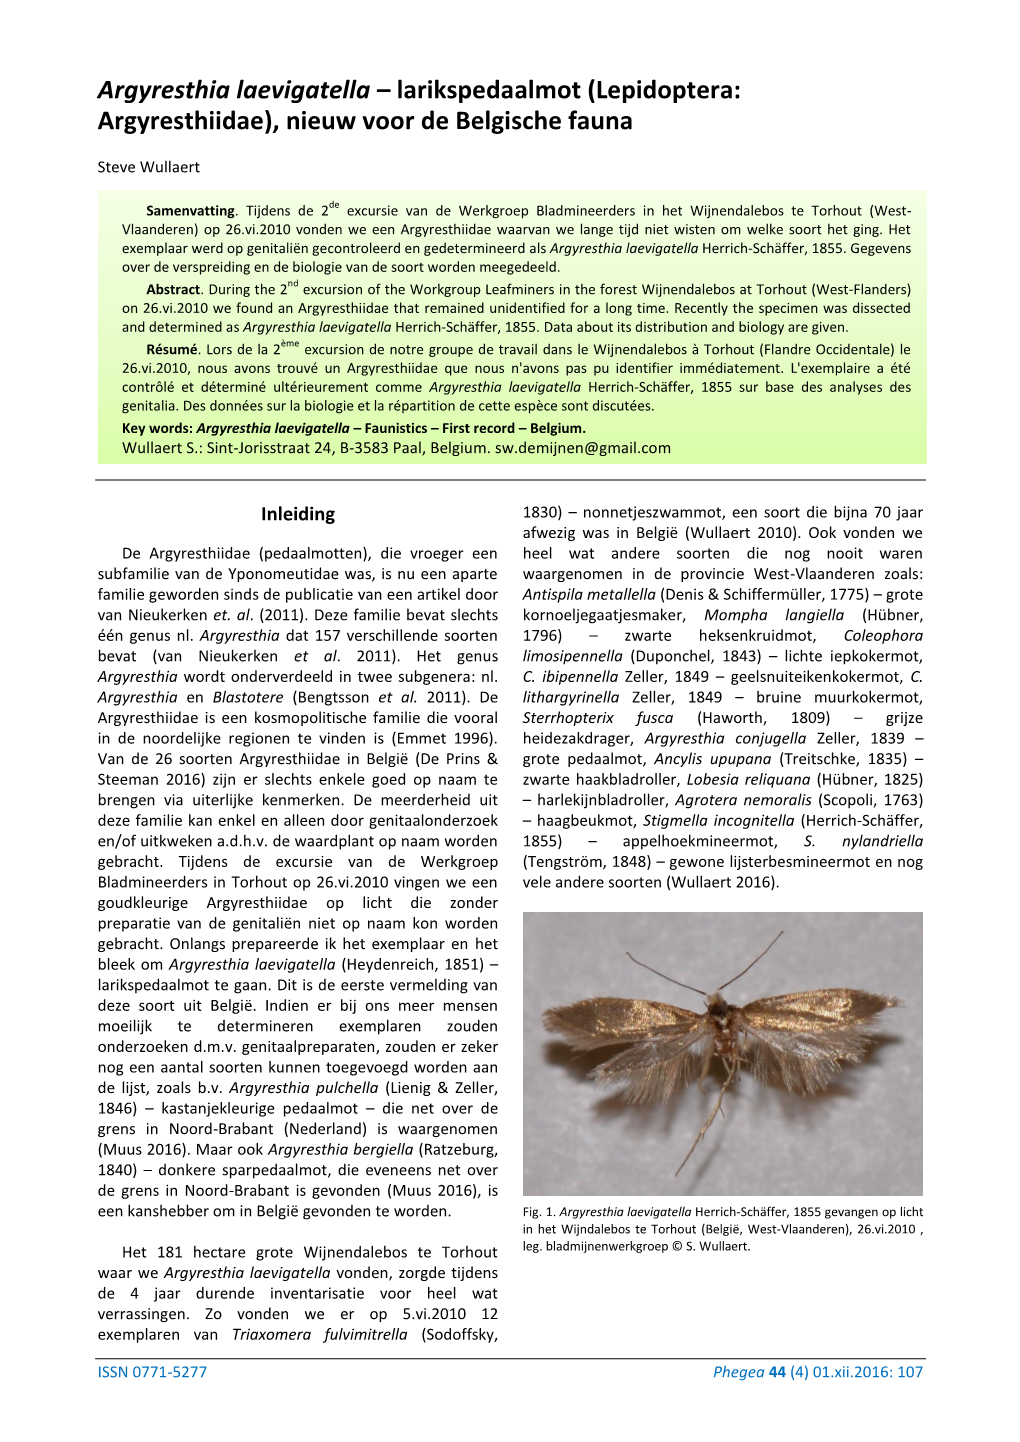 Argyresthia Laevigatella – Larikspedaalmot (Lepidoptera: Argyresthiidae), Nieuw Voor De Belgische Fauna